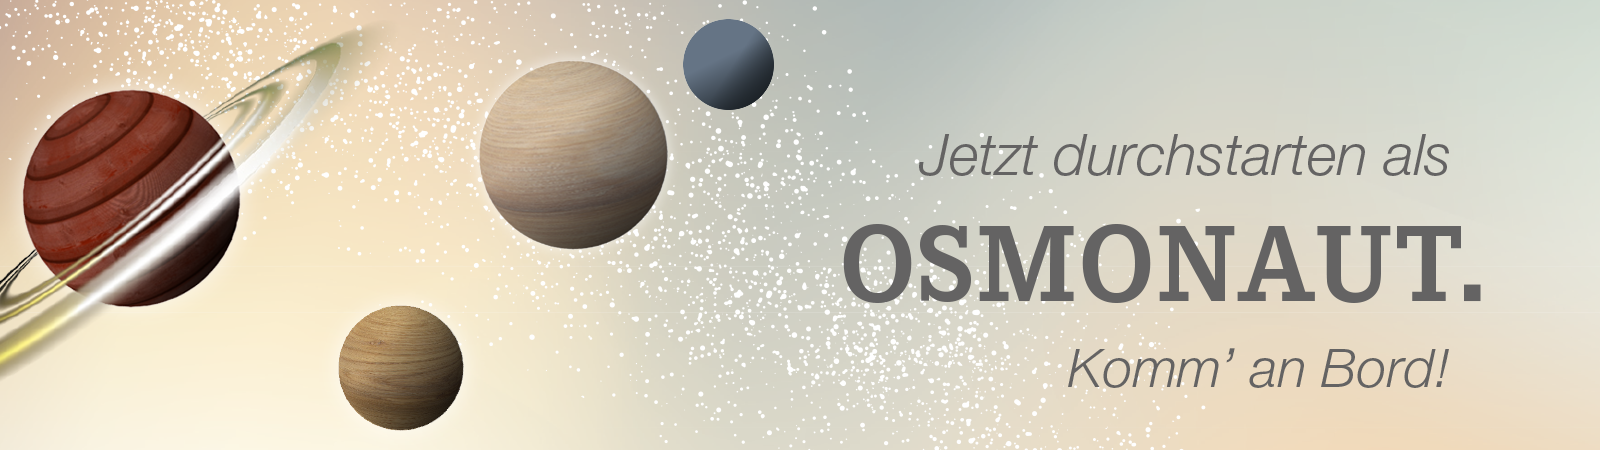 Werde jetzt Osmonaut bei Osmo und gestalte dir deine Zukunft als Mediengestalter:in bunt.